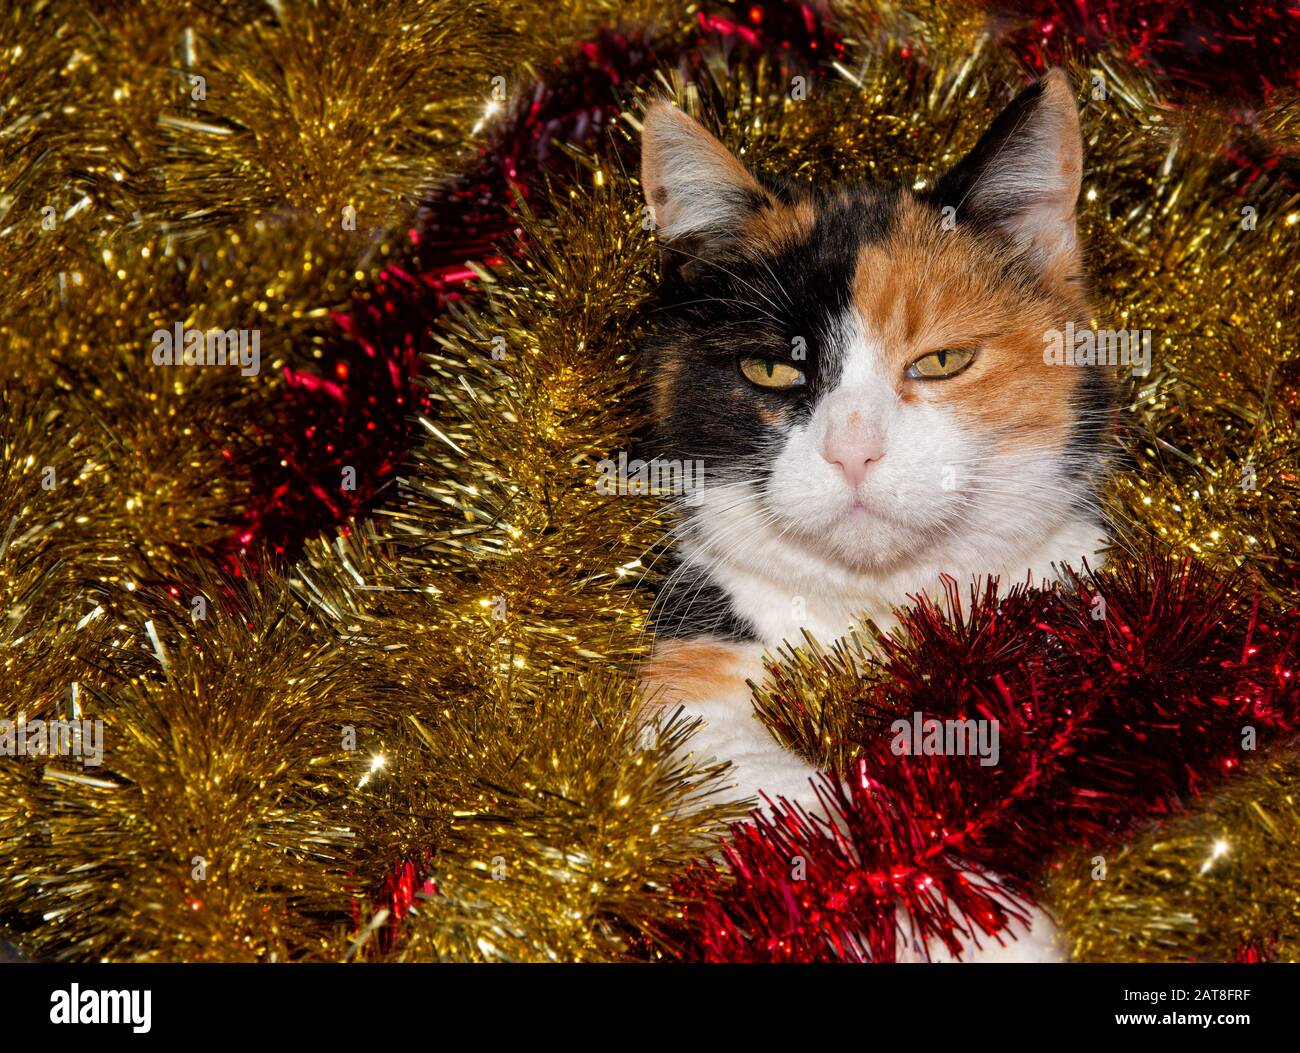 Magnifique chat calico au milieu de l'or et de la tinsel rouge Banque D'Images